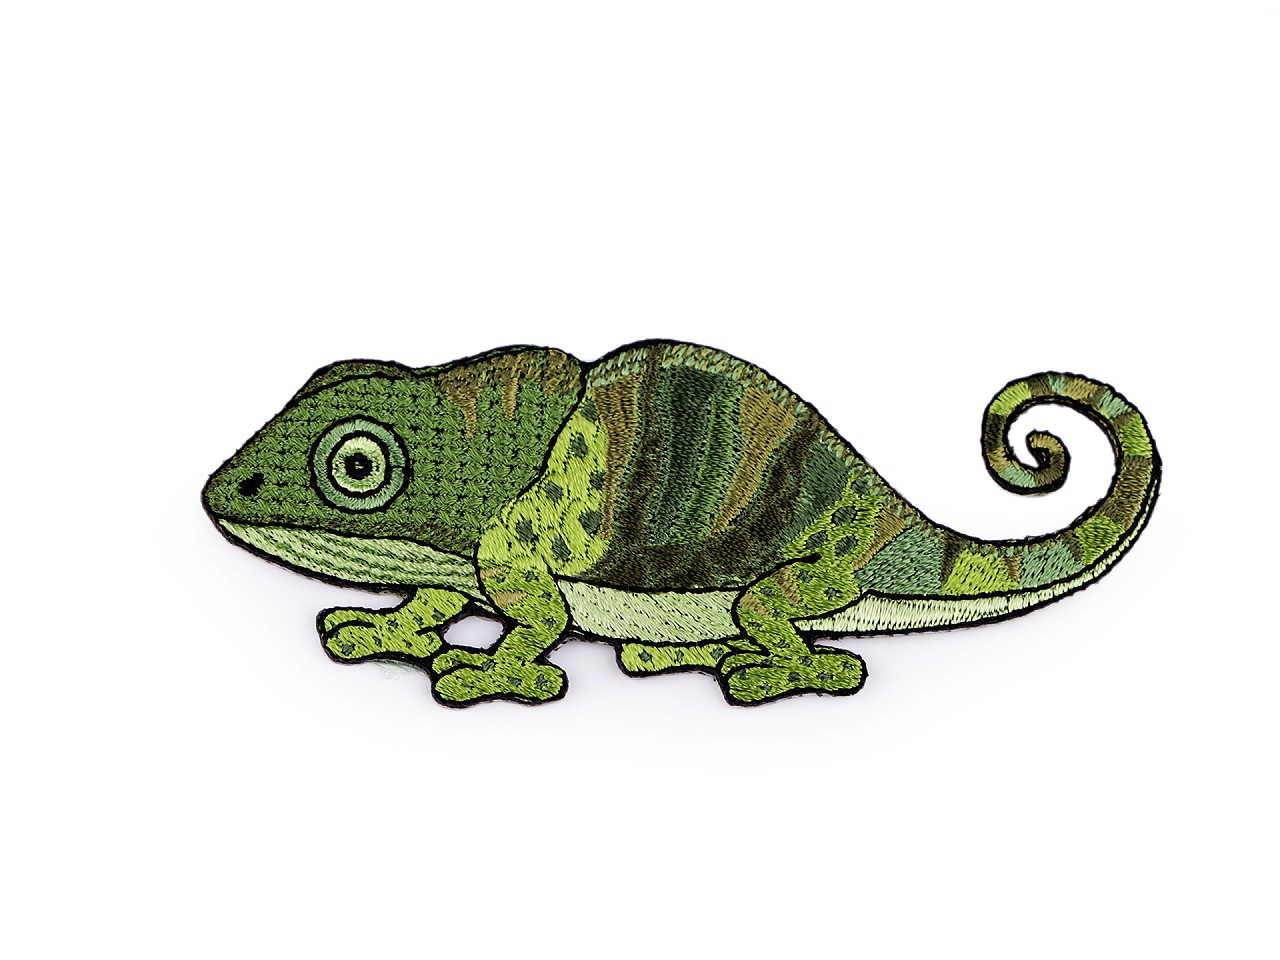 Nažehlovačka zvířata, barva 5 zelená sv. chameleon